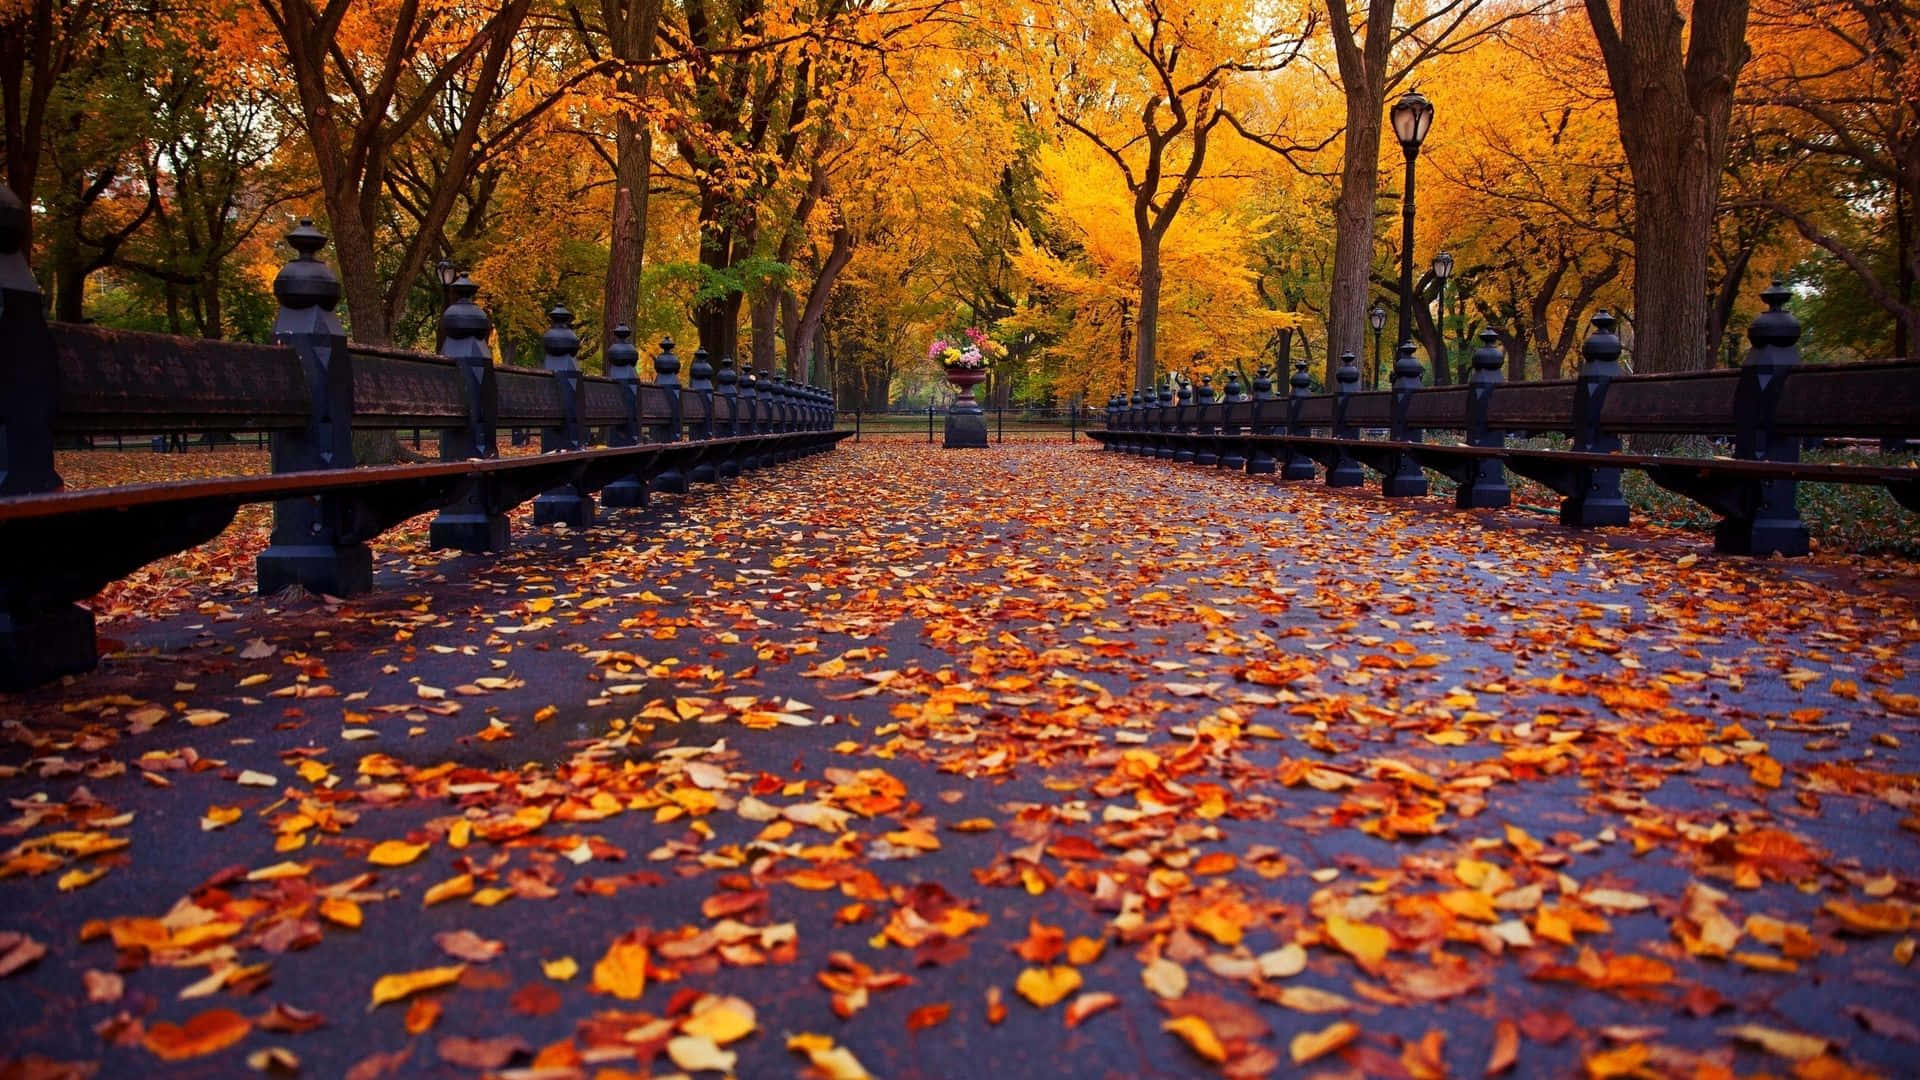 Genießensie Die Schönheit Des Herbstlaubs Draußen, Ohne Ihr Zuhause Zu Verlassen.